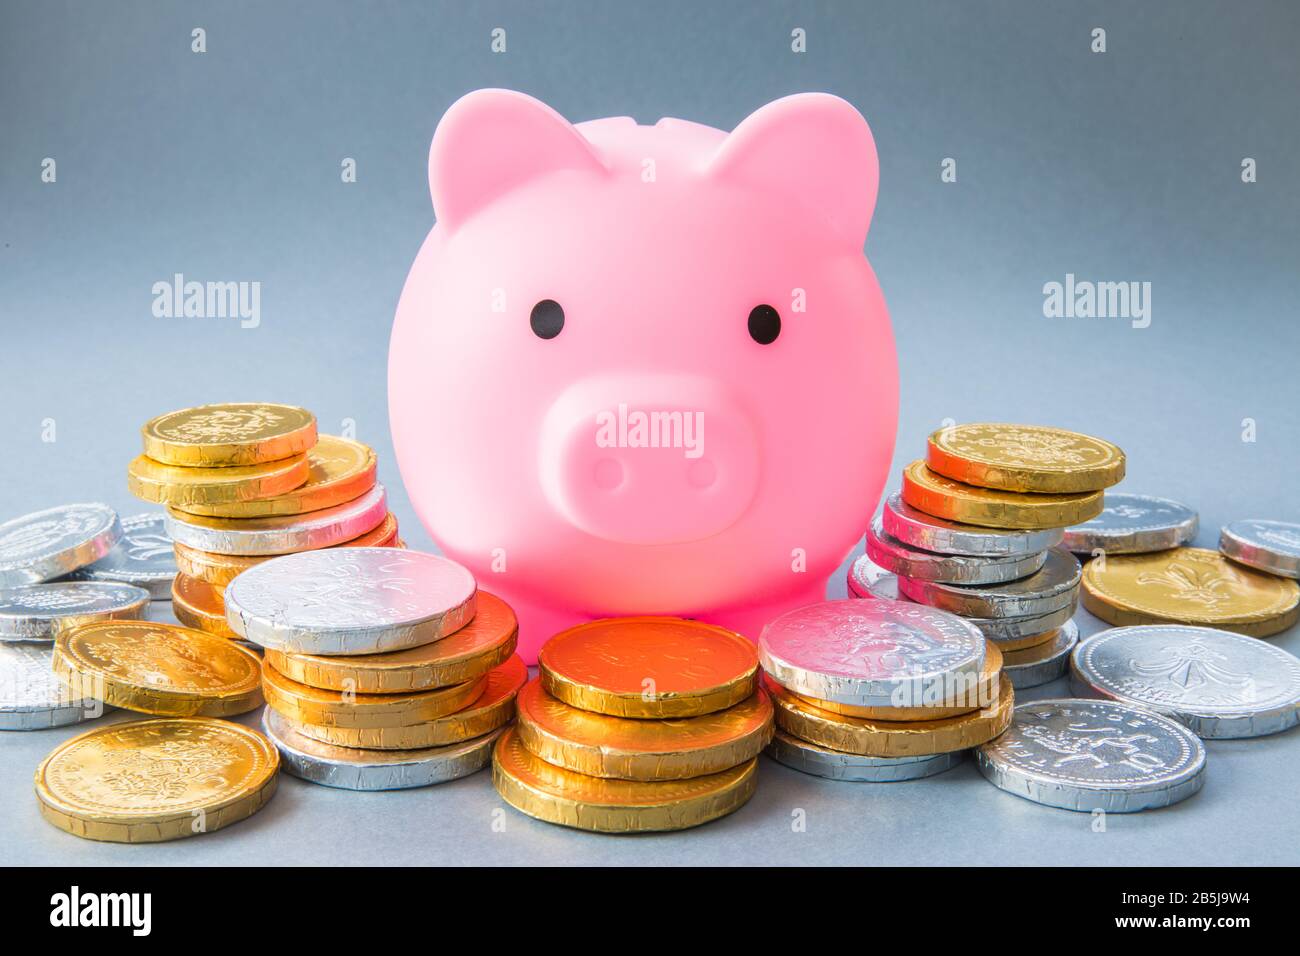 Image conceptuelle d'une grande banque de porc rose entourée d'espèces, de pièces de monnaie et d'argent représentant des économies, des banques et des enfants d'enseignement à économiser pour leur f Banque D'Images